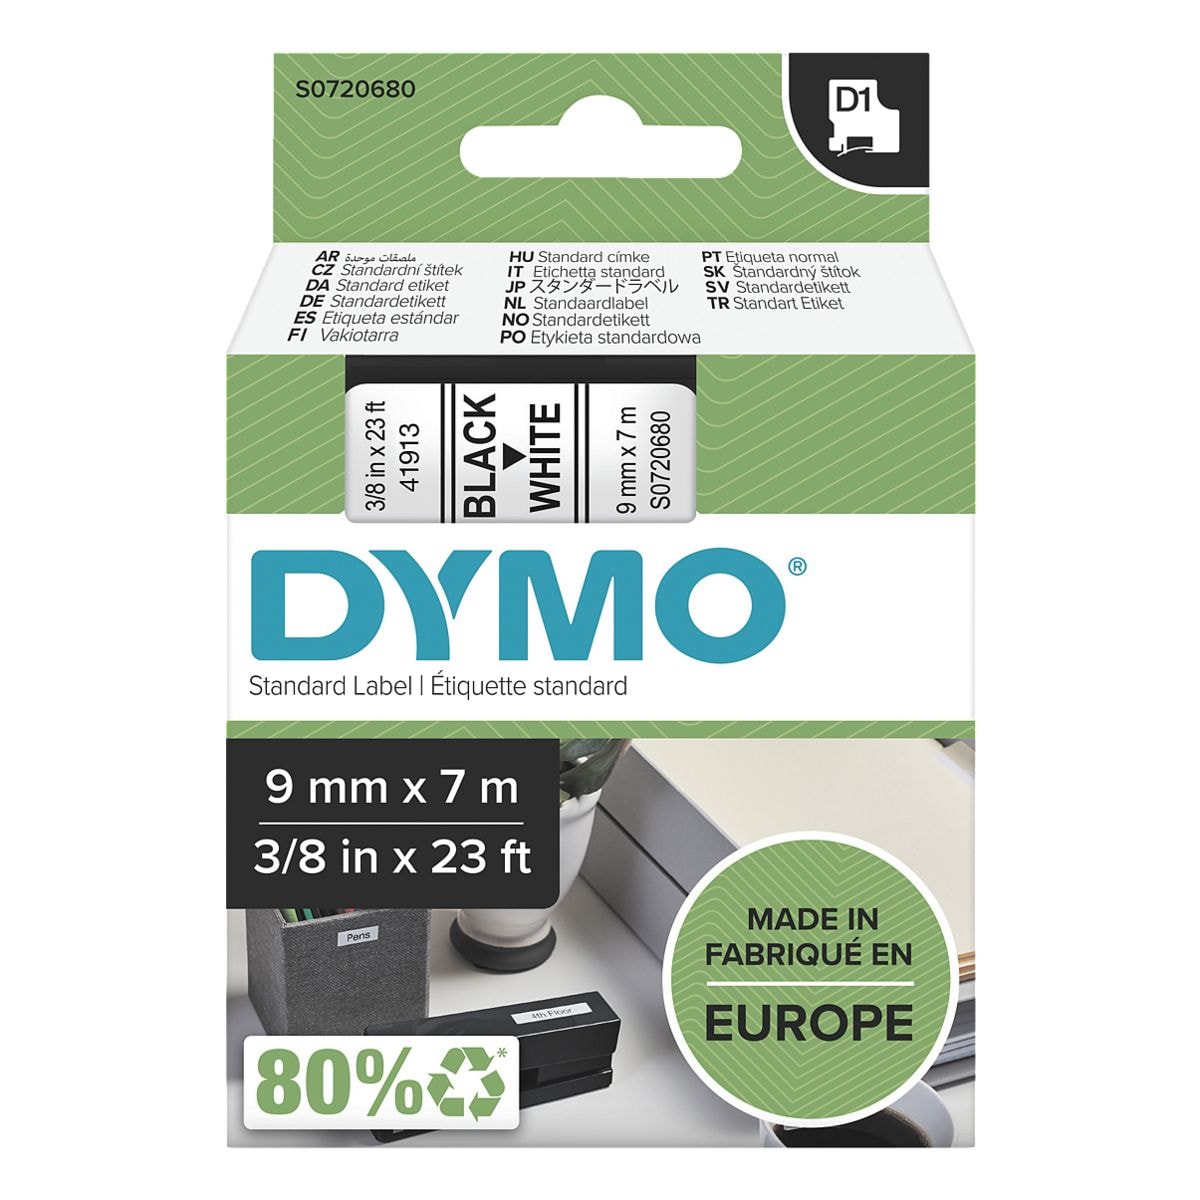 Dymo ruban pour titreuse 9 mm x 7 m pour titreuse Dymo D1